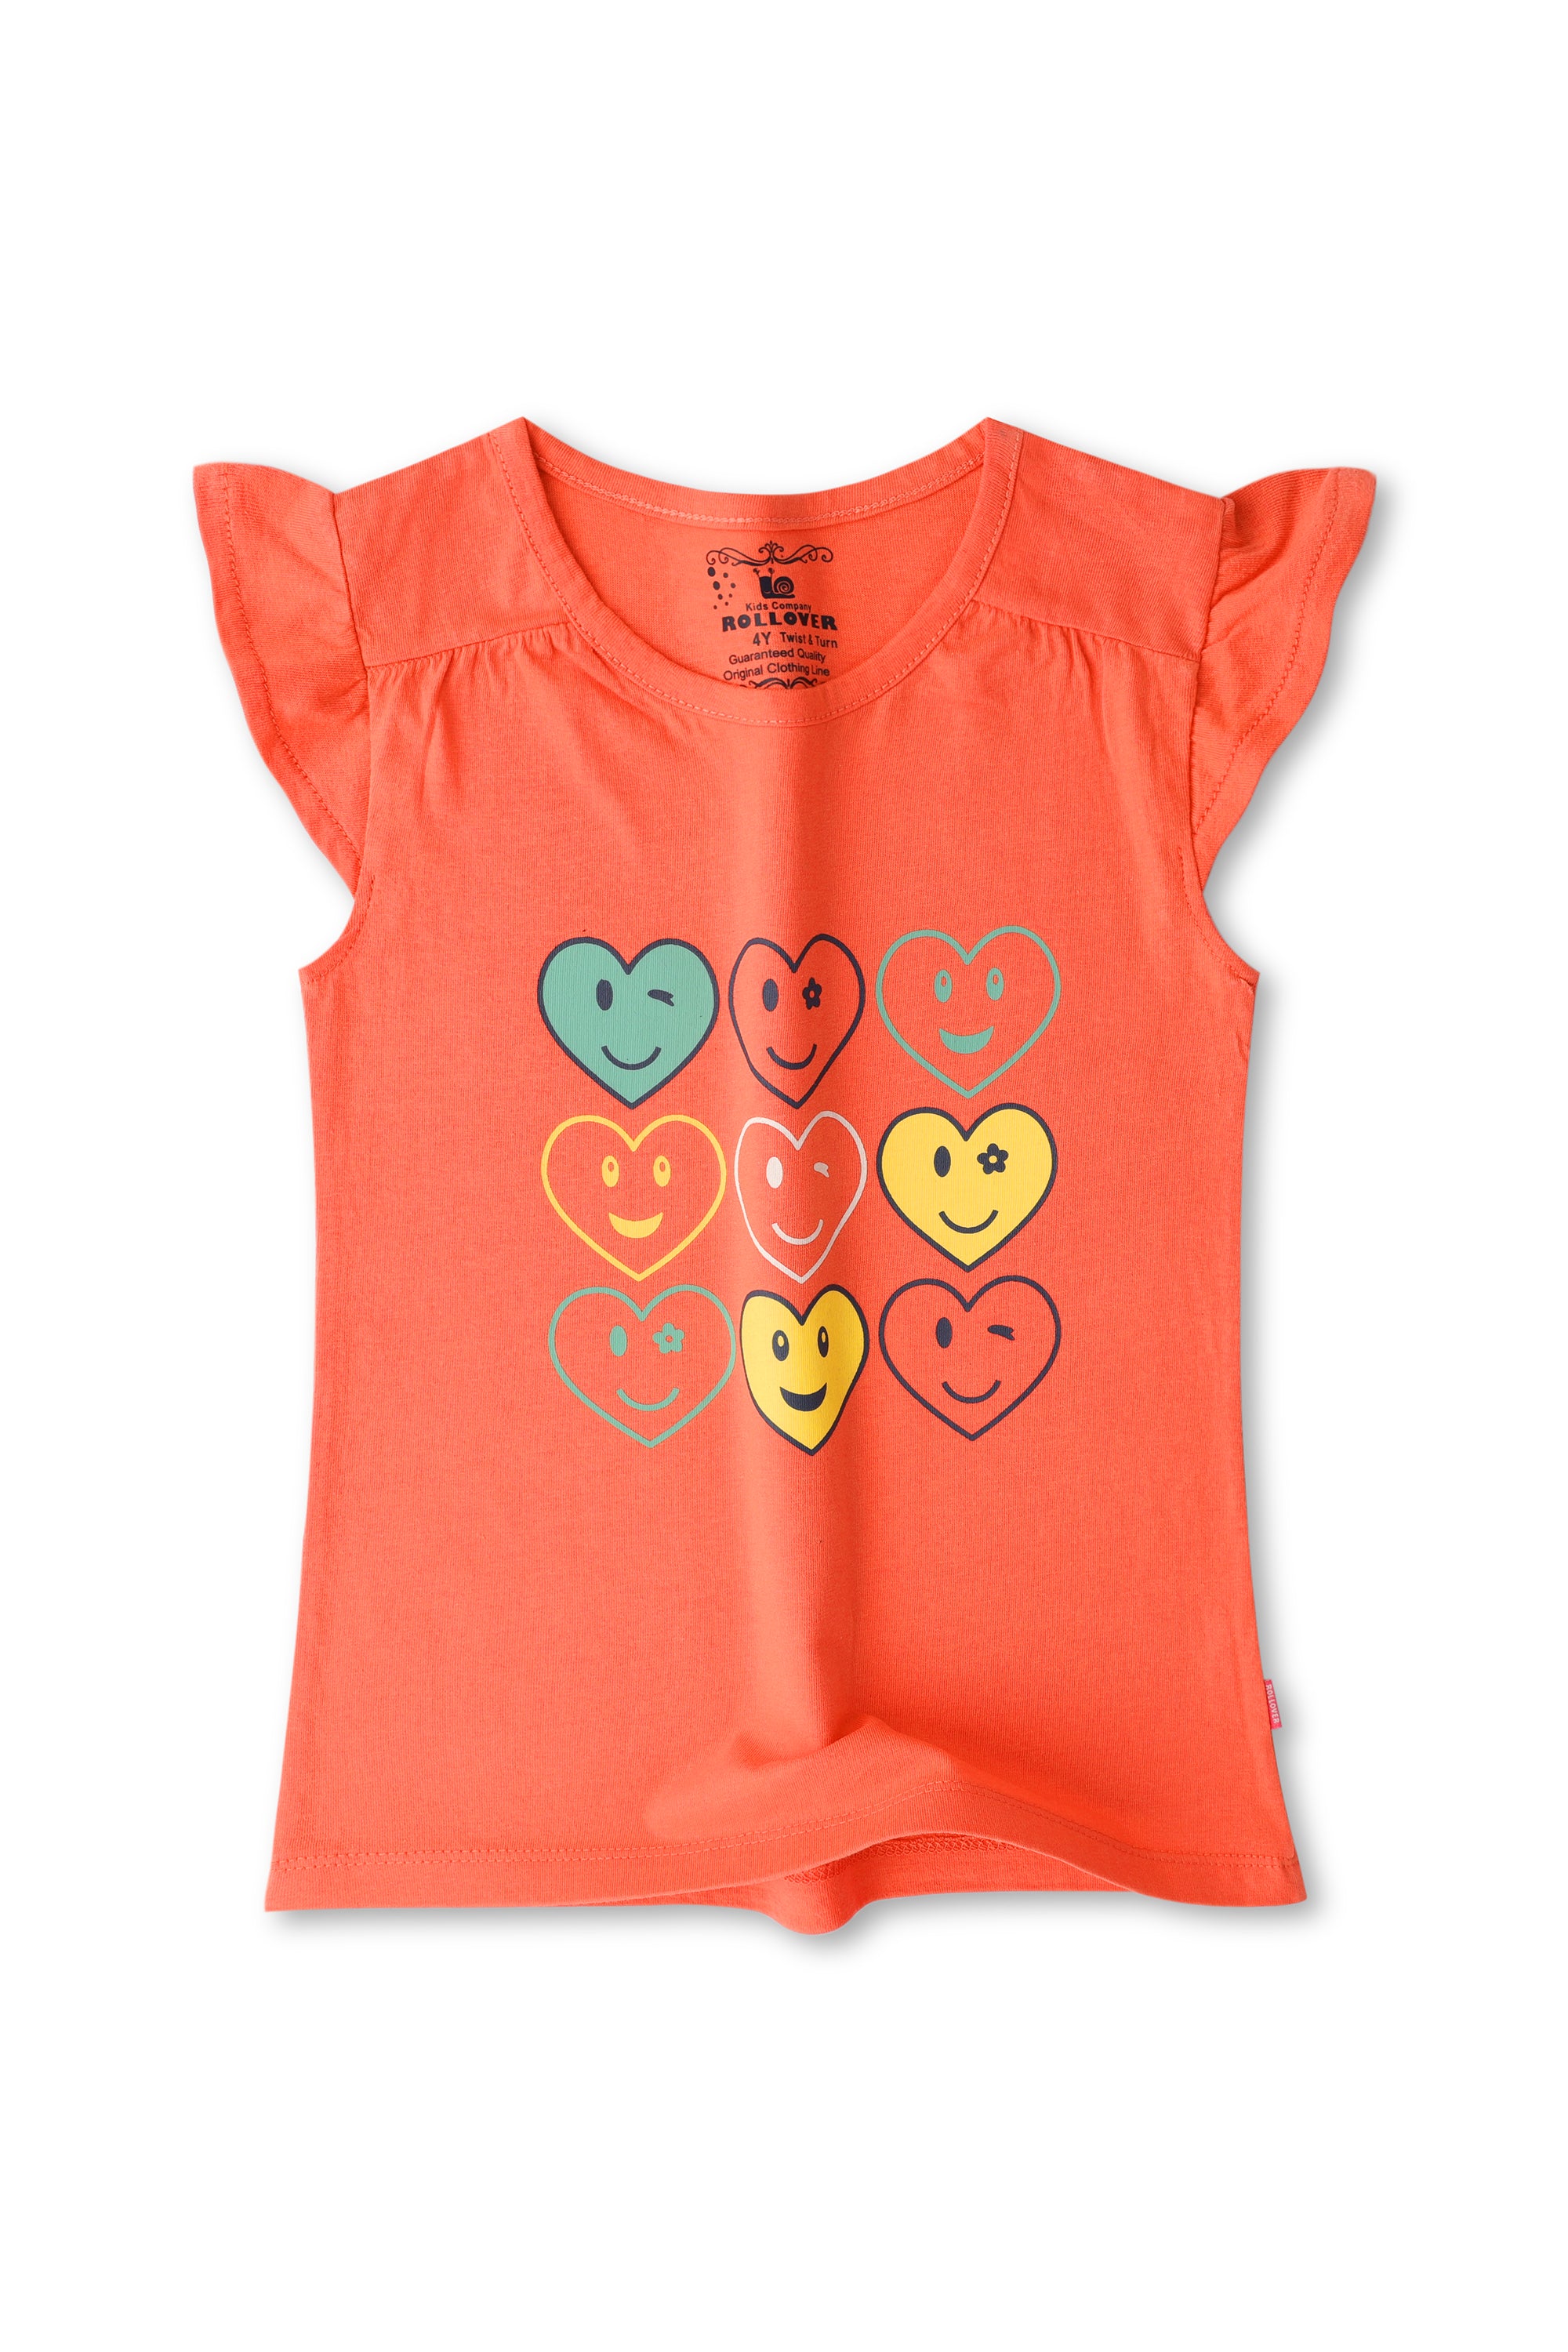 Girls Coral Hearts Shirt